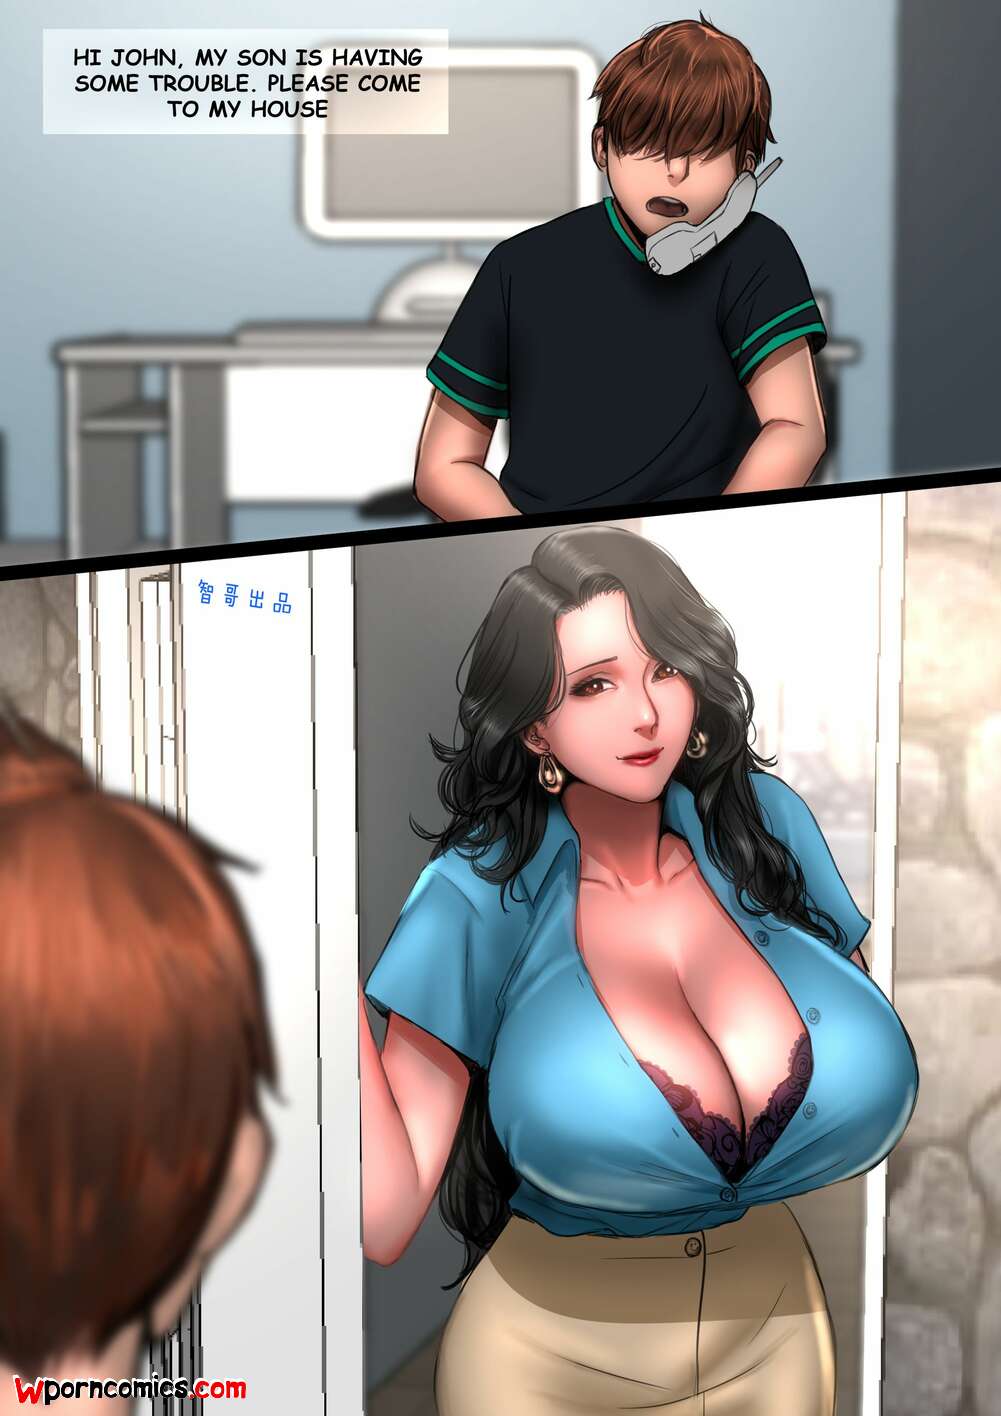 Busty teacher porn comics